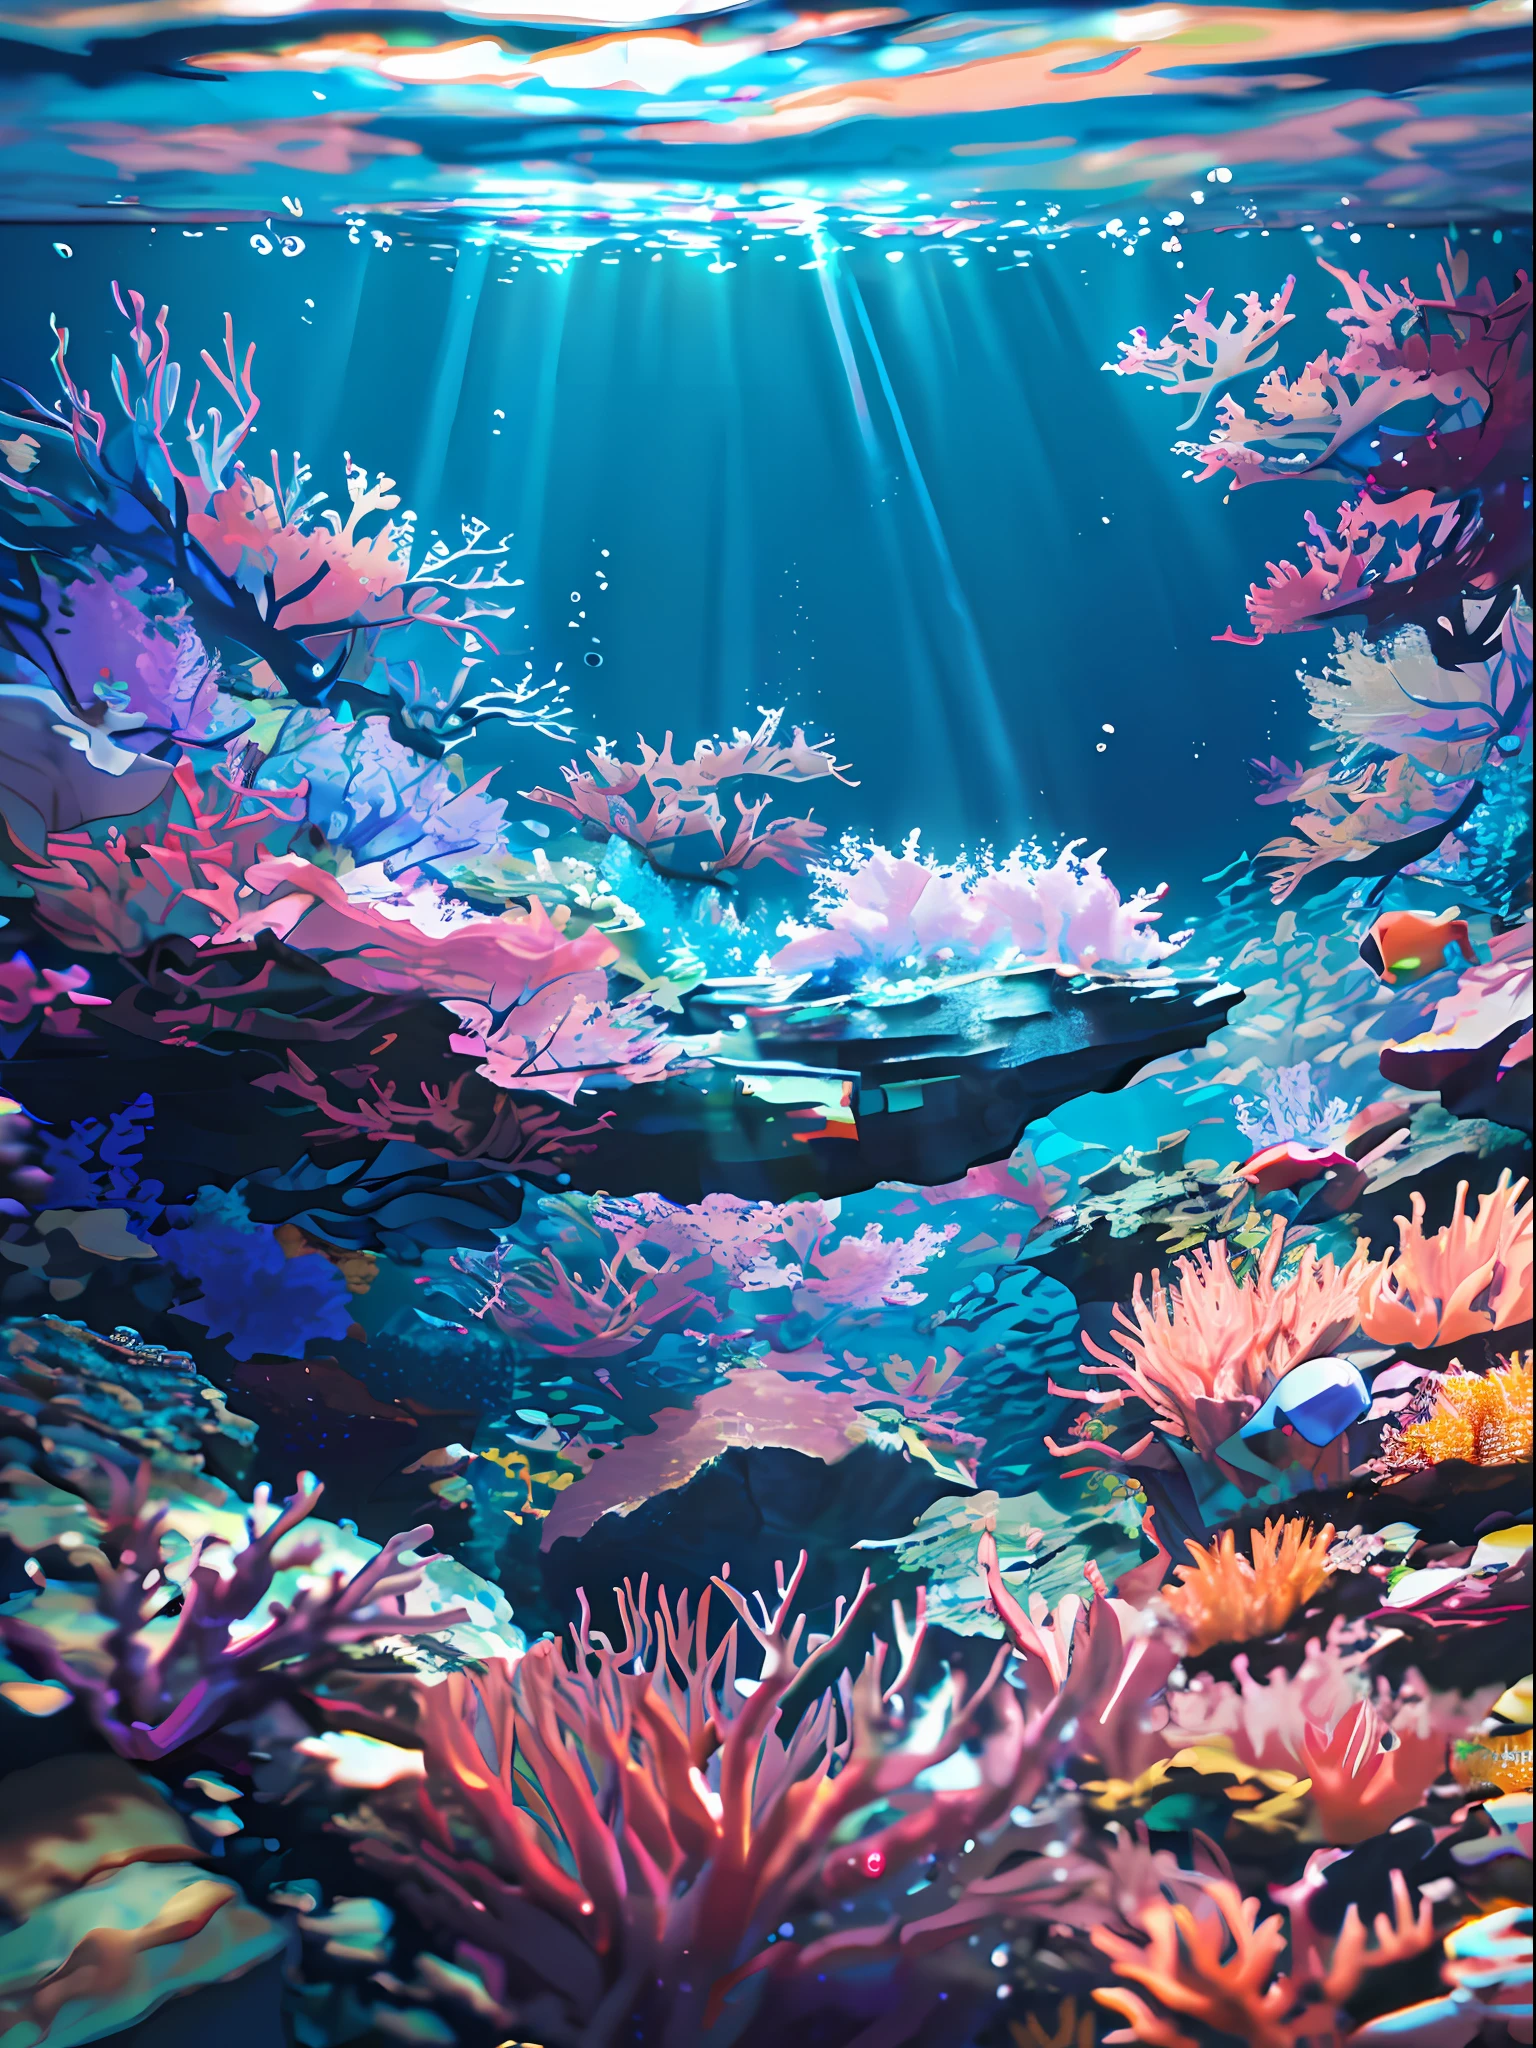 (تحفة, أفضل جودة:1.2), (لا البشر, جرف, تحت الماء, وجهة نظر, من الأسفل:1.5), 8 ك, صورة خام, سخافات, الشعاب المرجانية الجميلة, الصخور, العديد من الأسماك الصغيرة جدًا, الأسماك الاستوائية الملونة, تسربات الضوء, عمق الميدان, سكيب مذهل, حبوب الفيلم, انحراف لوني, الإضاءة الديناميكية, الإضاءة الدرامية, تقرير التنمية البشرية, واقعية, حبوب الفيلم, انحراف لوني, دقة عالية, مفصلة للغاية, التفاصيل الدقيقة, مفصلة للغاية, ظل, التركيز الشديد